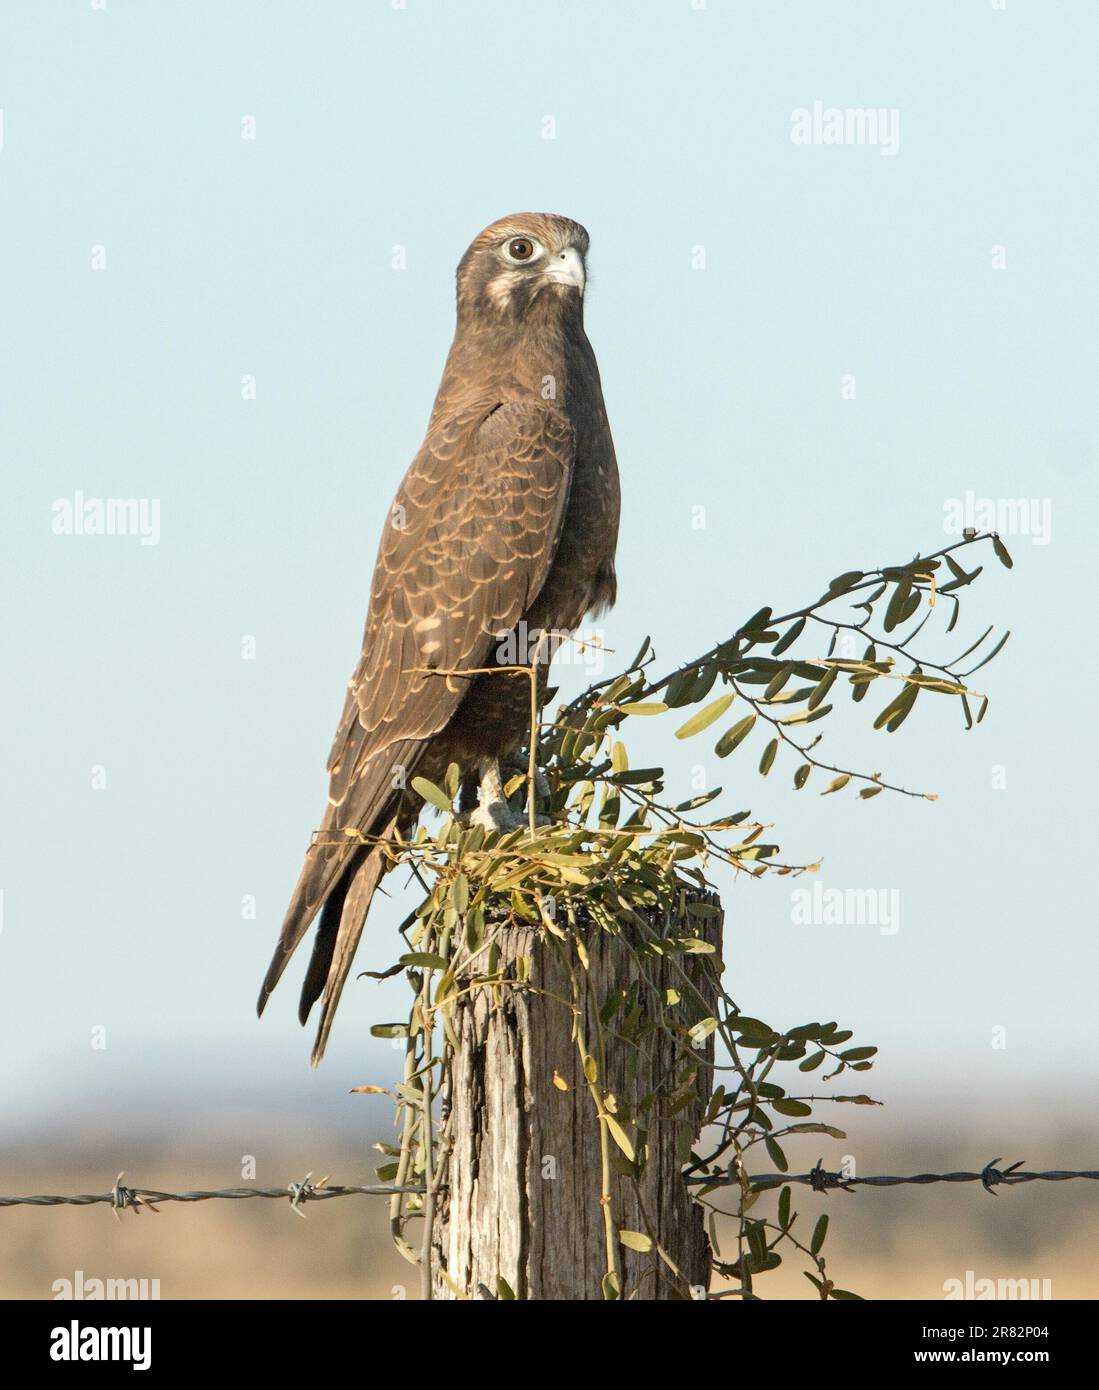 Falco marrone, Falco berigora, in posa di allerta, arroccato su un palo di recinzione con le intemperie contro il cielo azzurro nell'entroterra australiano Foto Stock